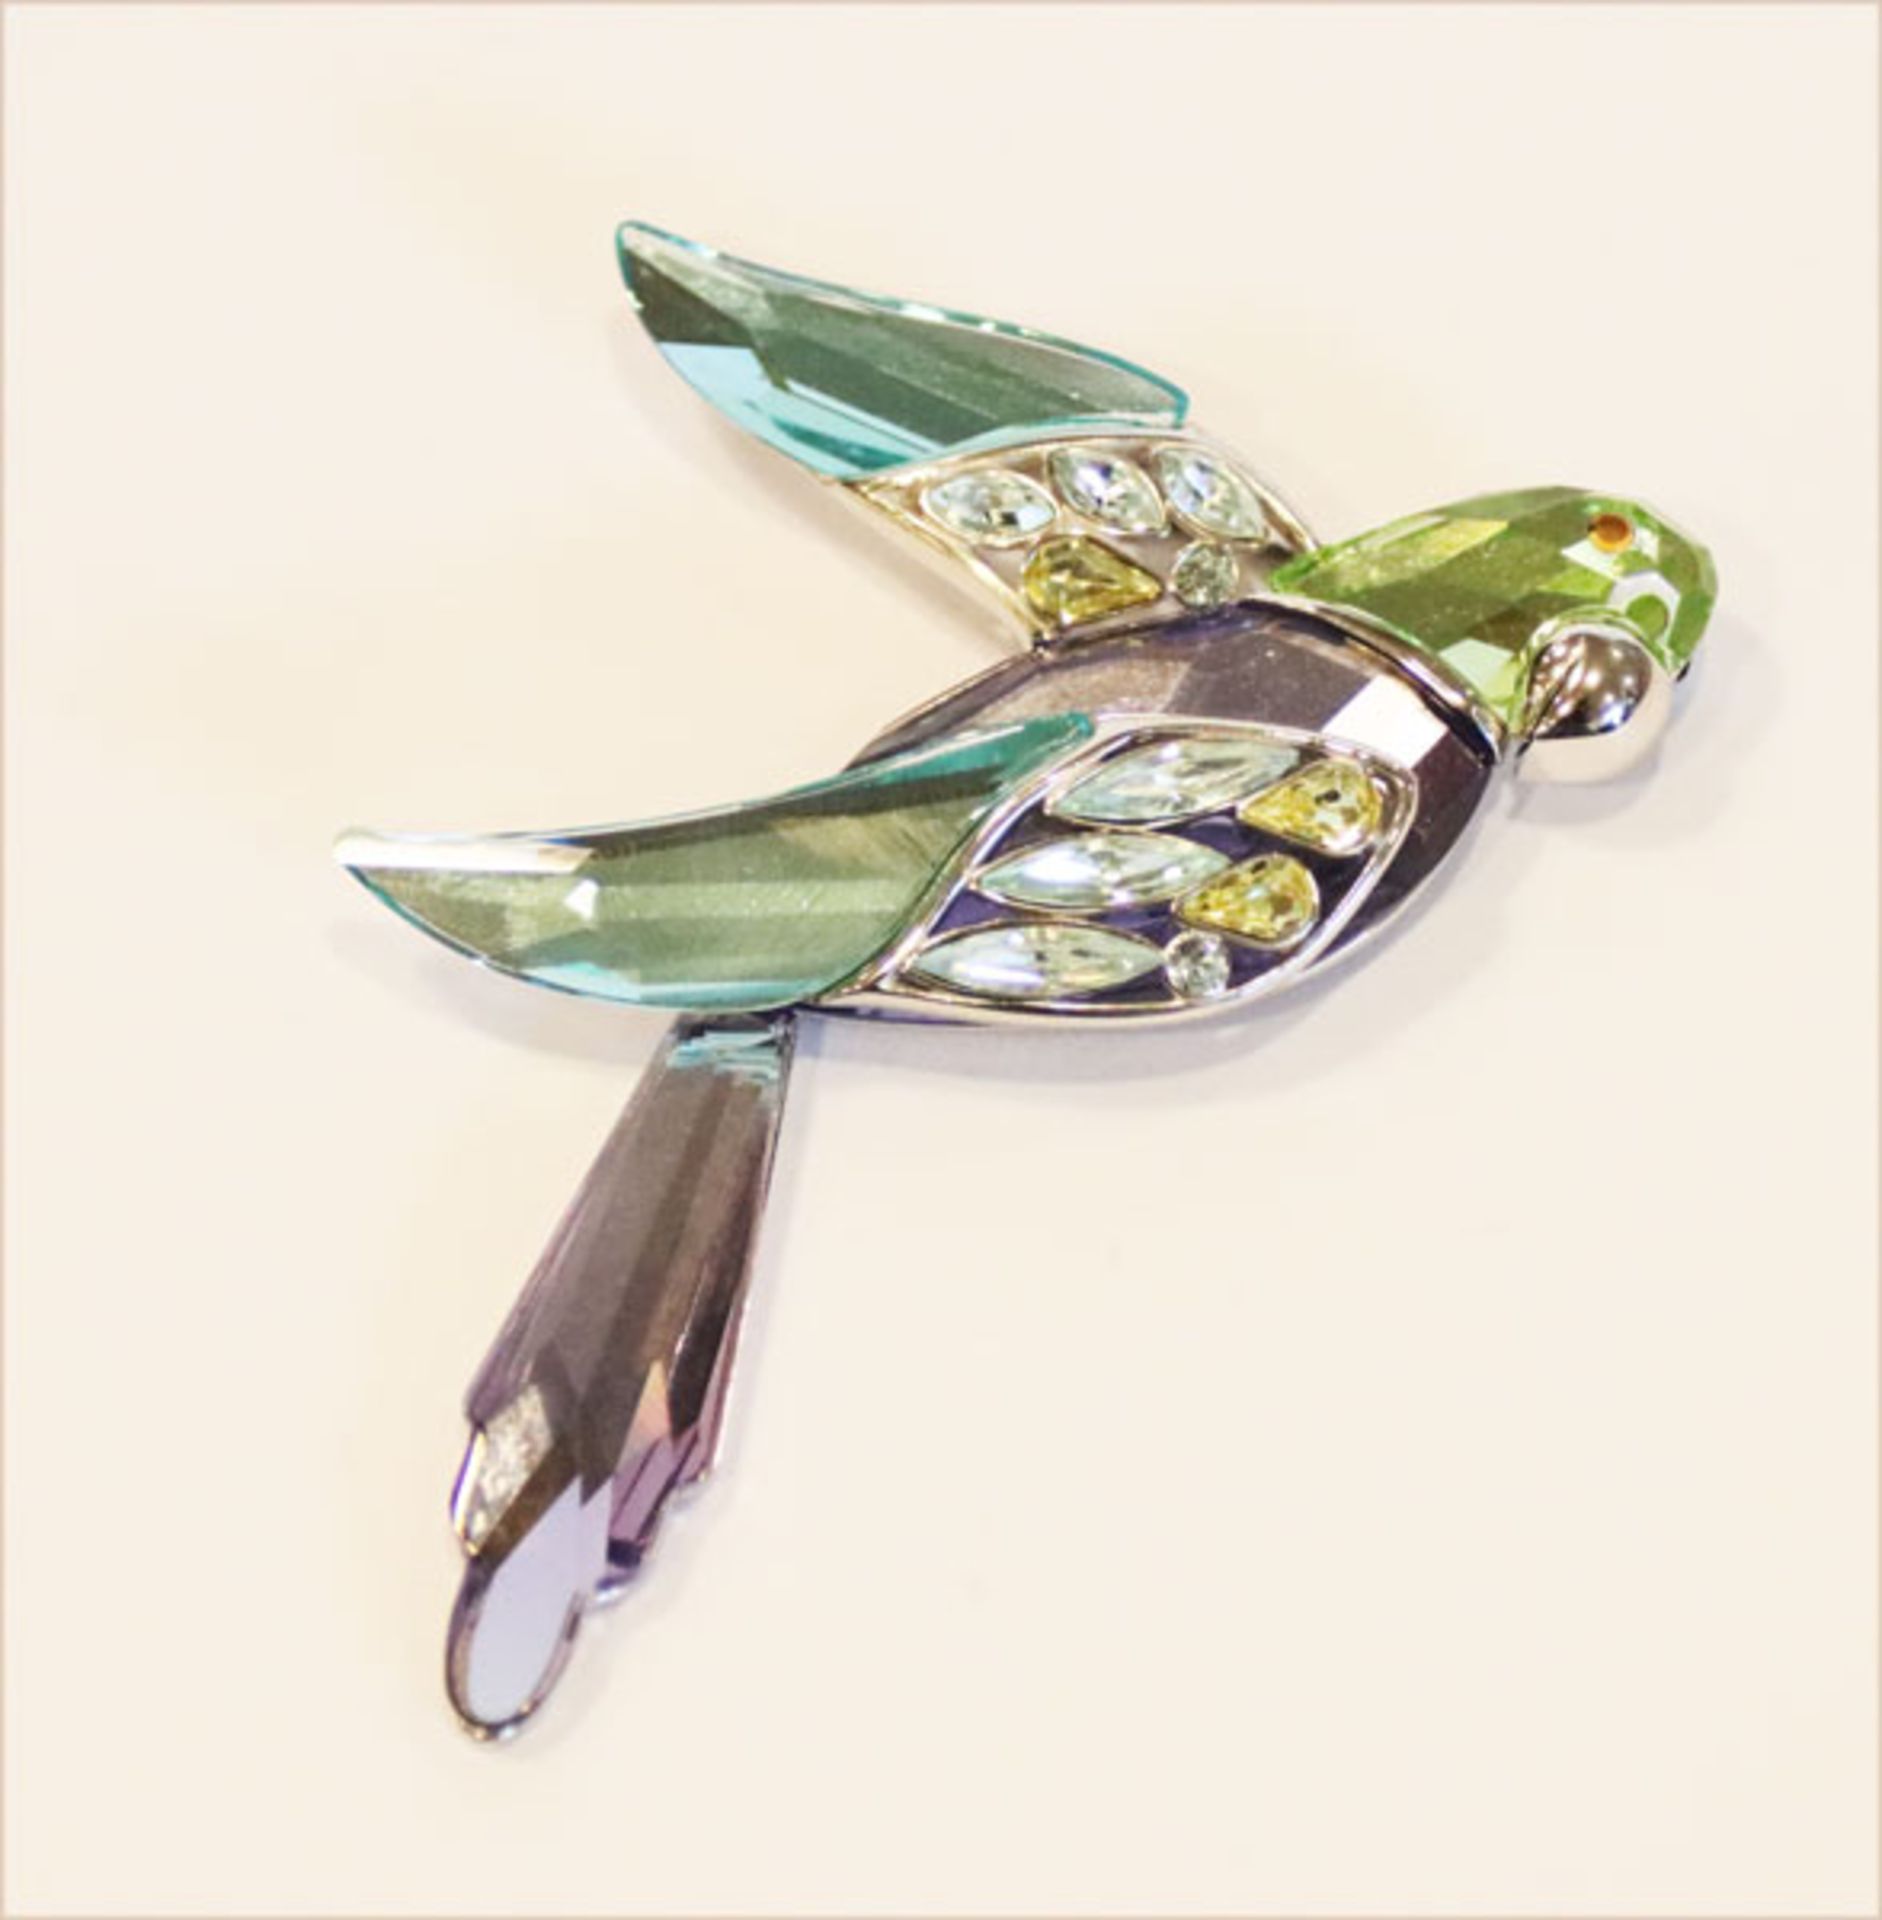 Swarovski Sterlingsilber Brosche 'Papagei', mit farbigem Kristall, L 8 cm, 33 gr., in